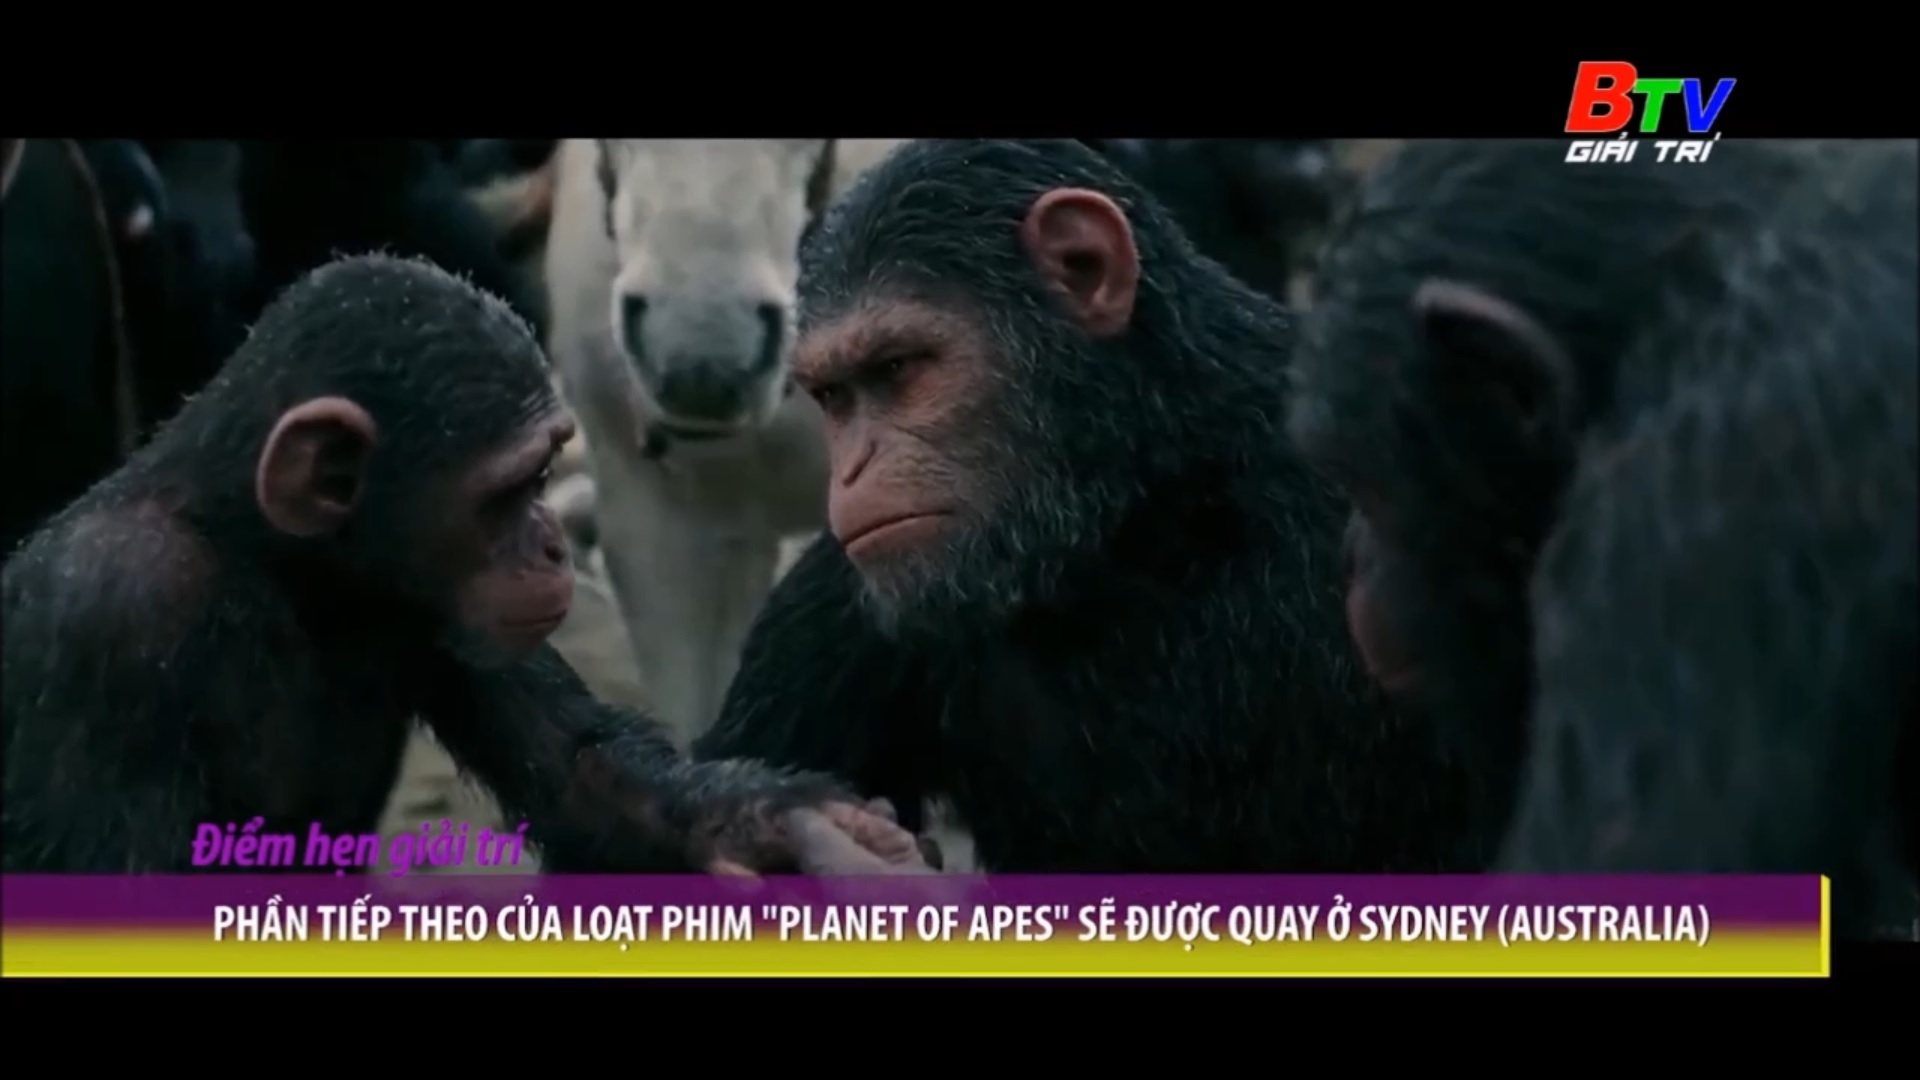 Phần tiếp theo của loạt phim “Planet Of Apes” sẽ được quay ở Sydney (Australia)